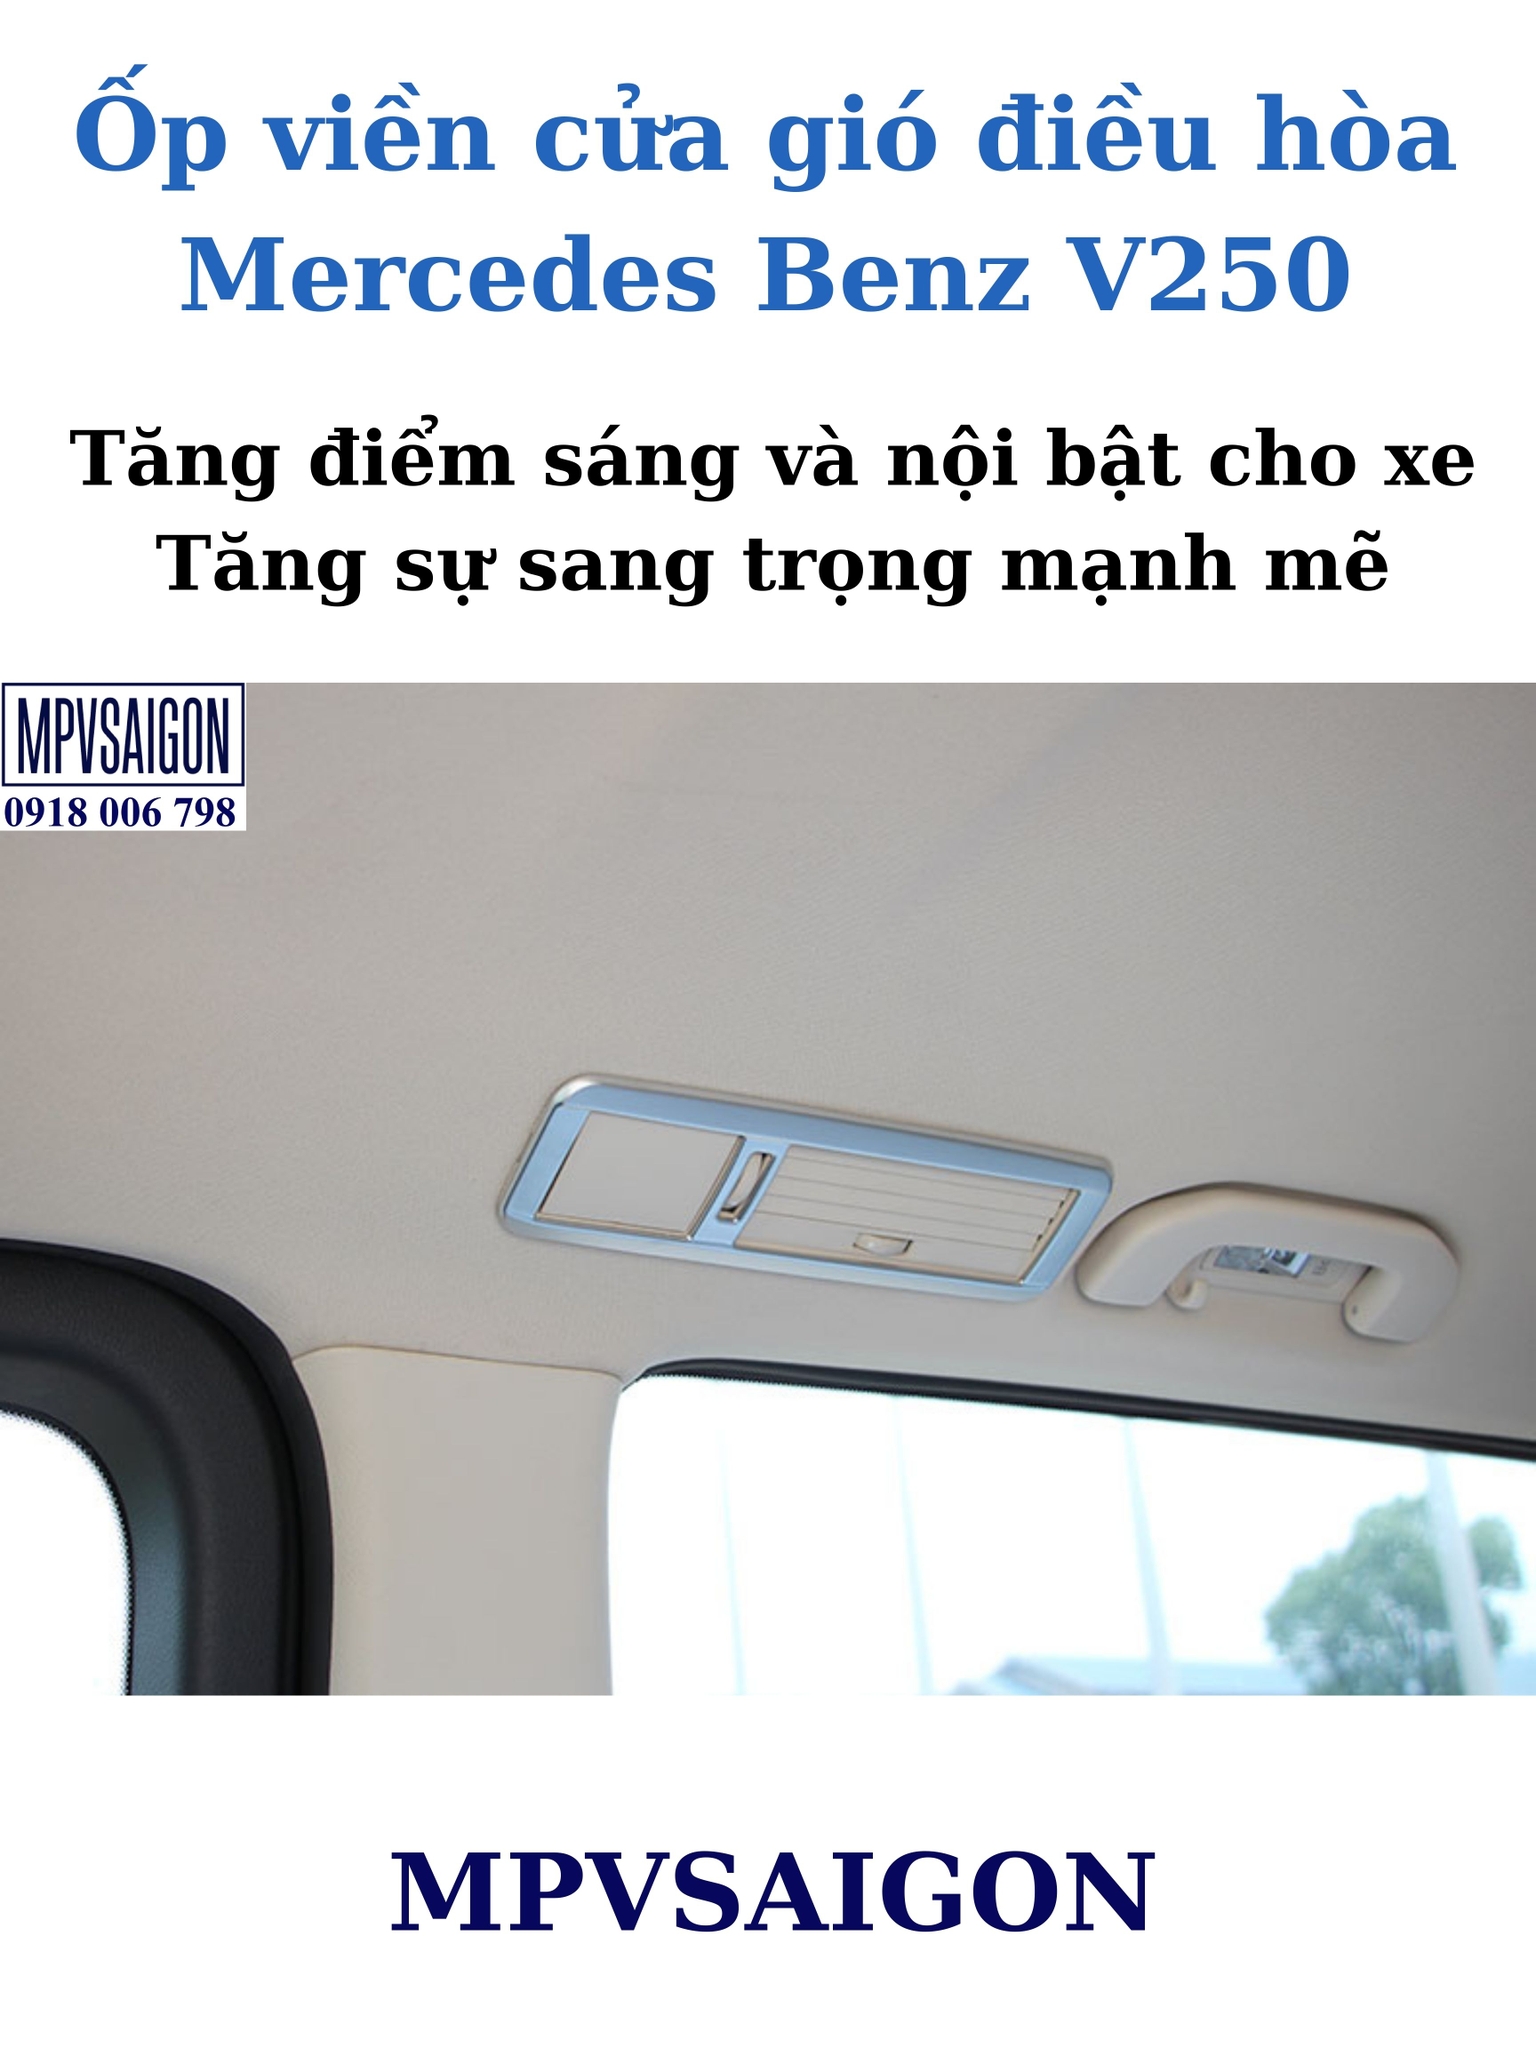 Ốp cửa gió điều hòa Mercedes Benz V250